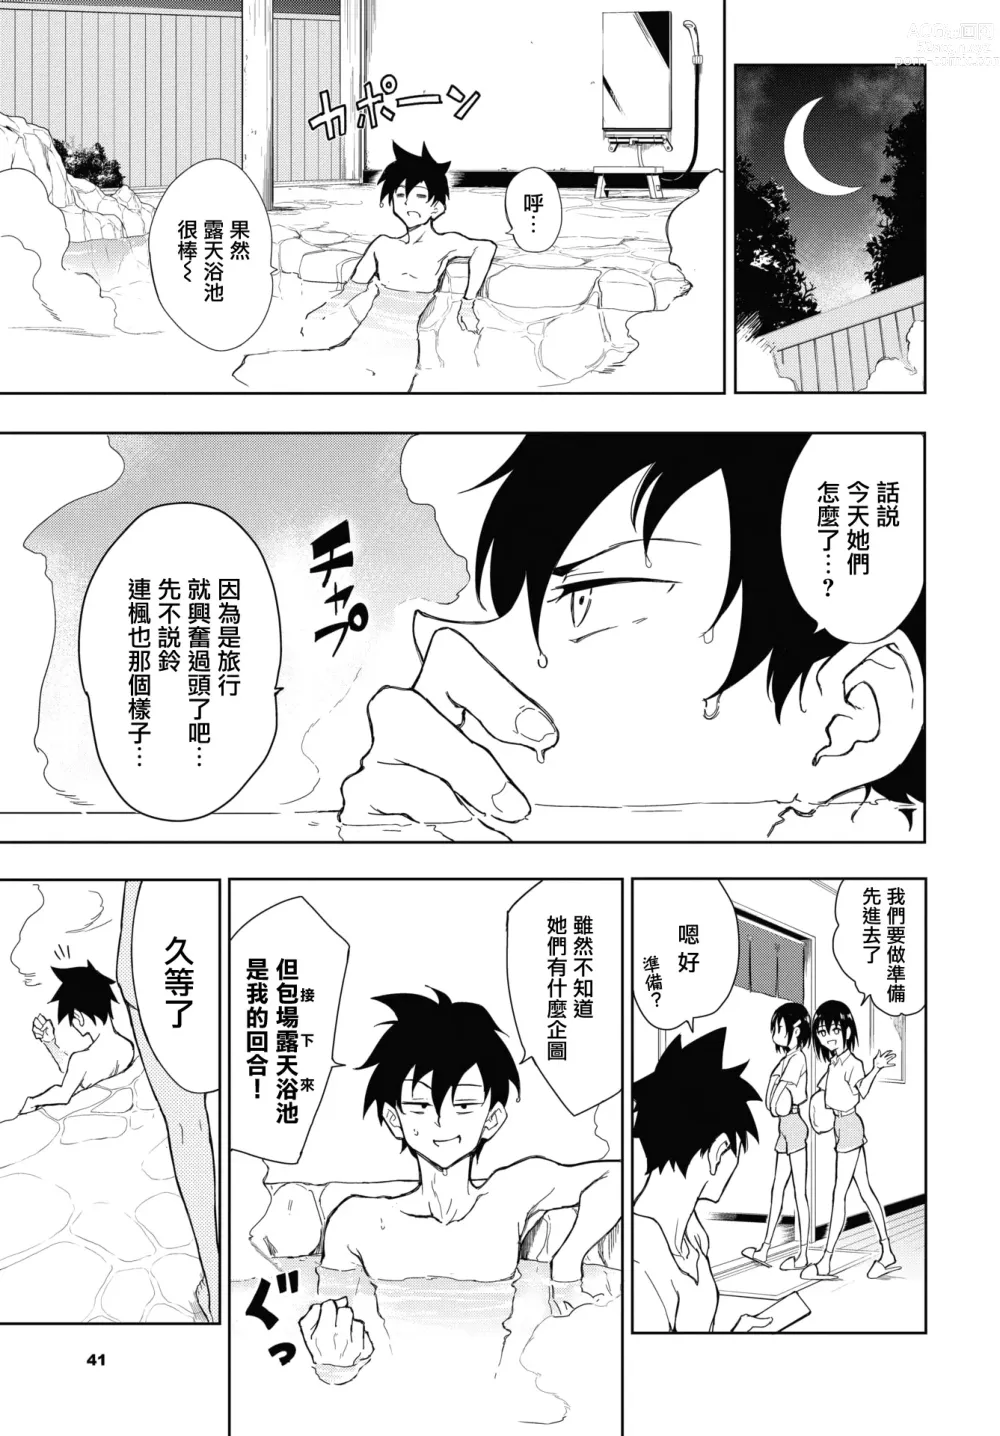 Page 11 of manga Kaede to Suzu 7